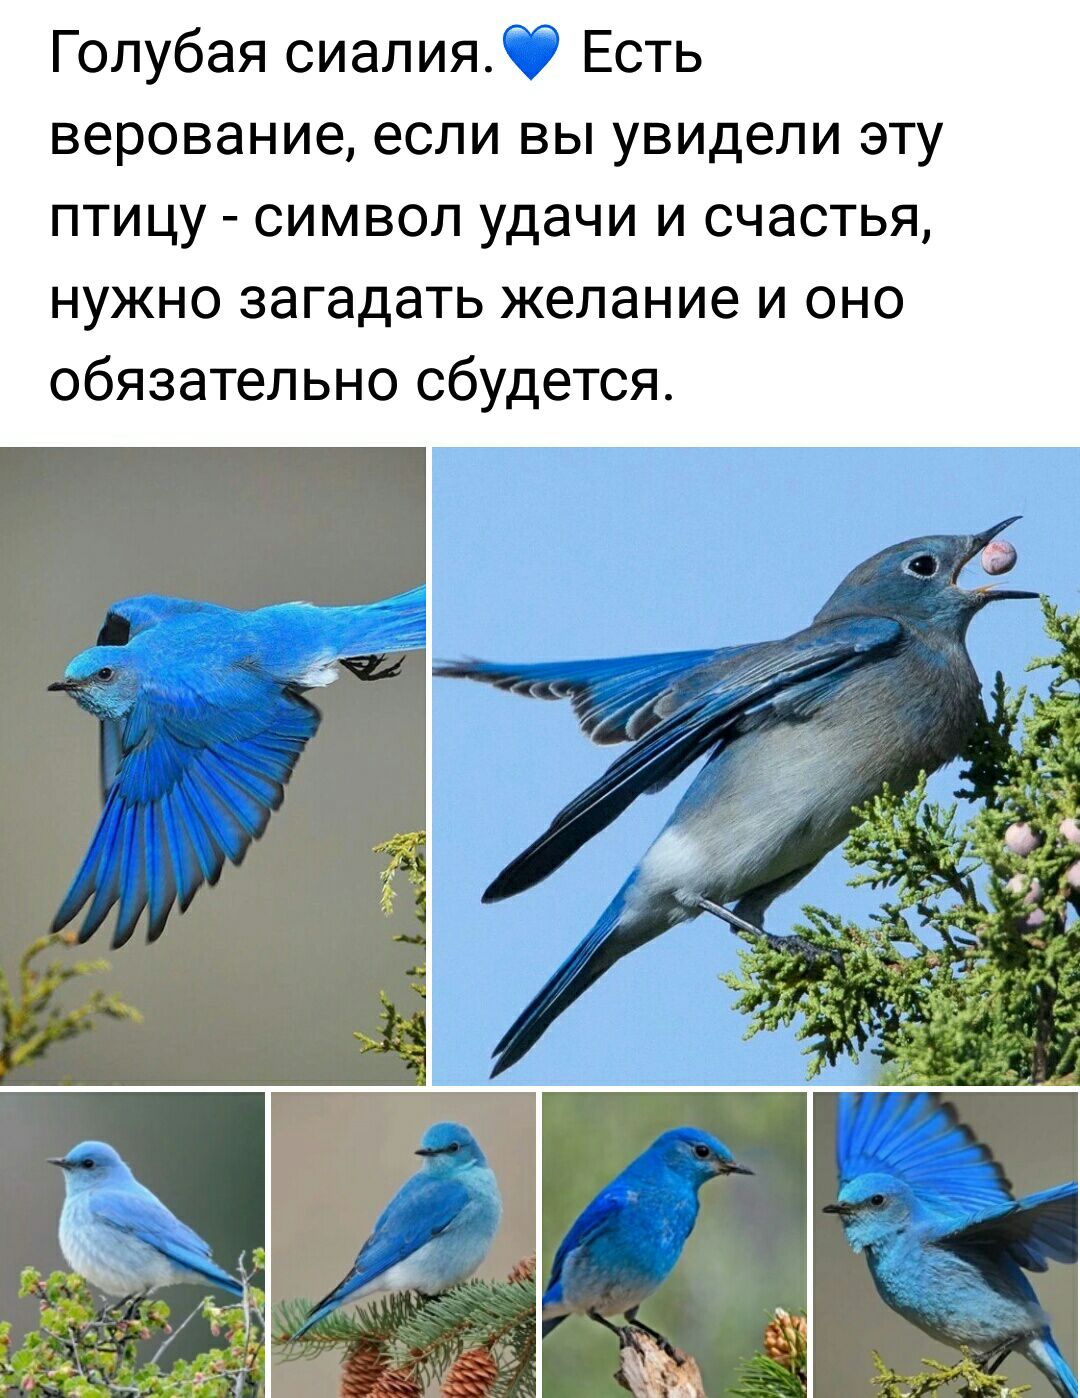 Голубая сиалия Есть верование если вы увидели эту птицу символ удачи и счастья нужно загадать желание и оно обязательно сбудется